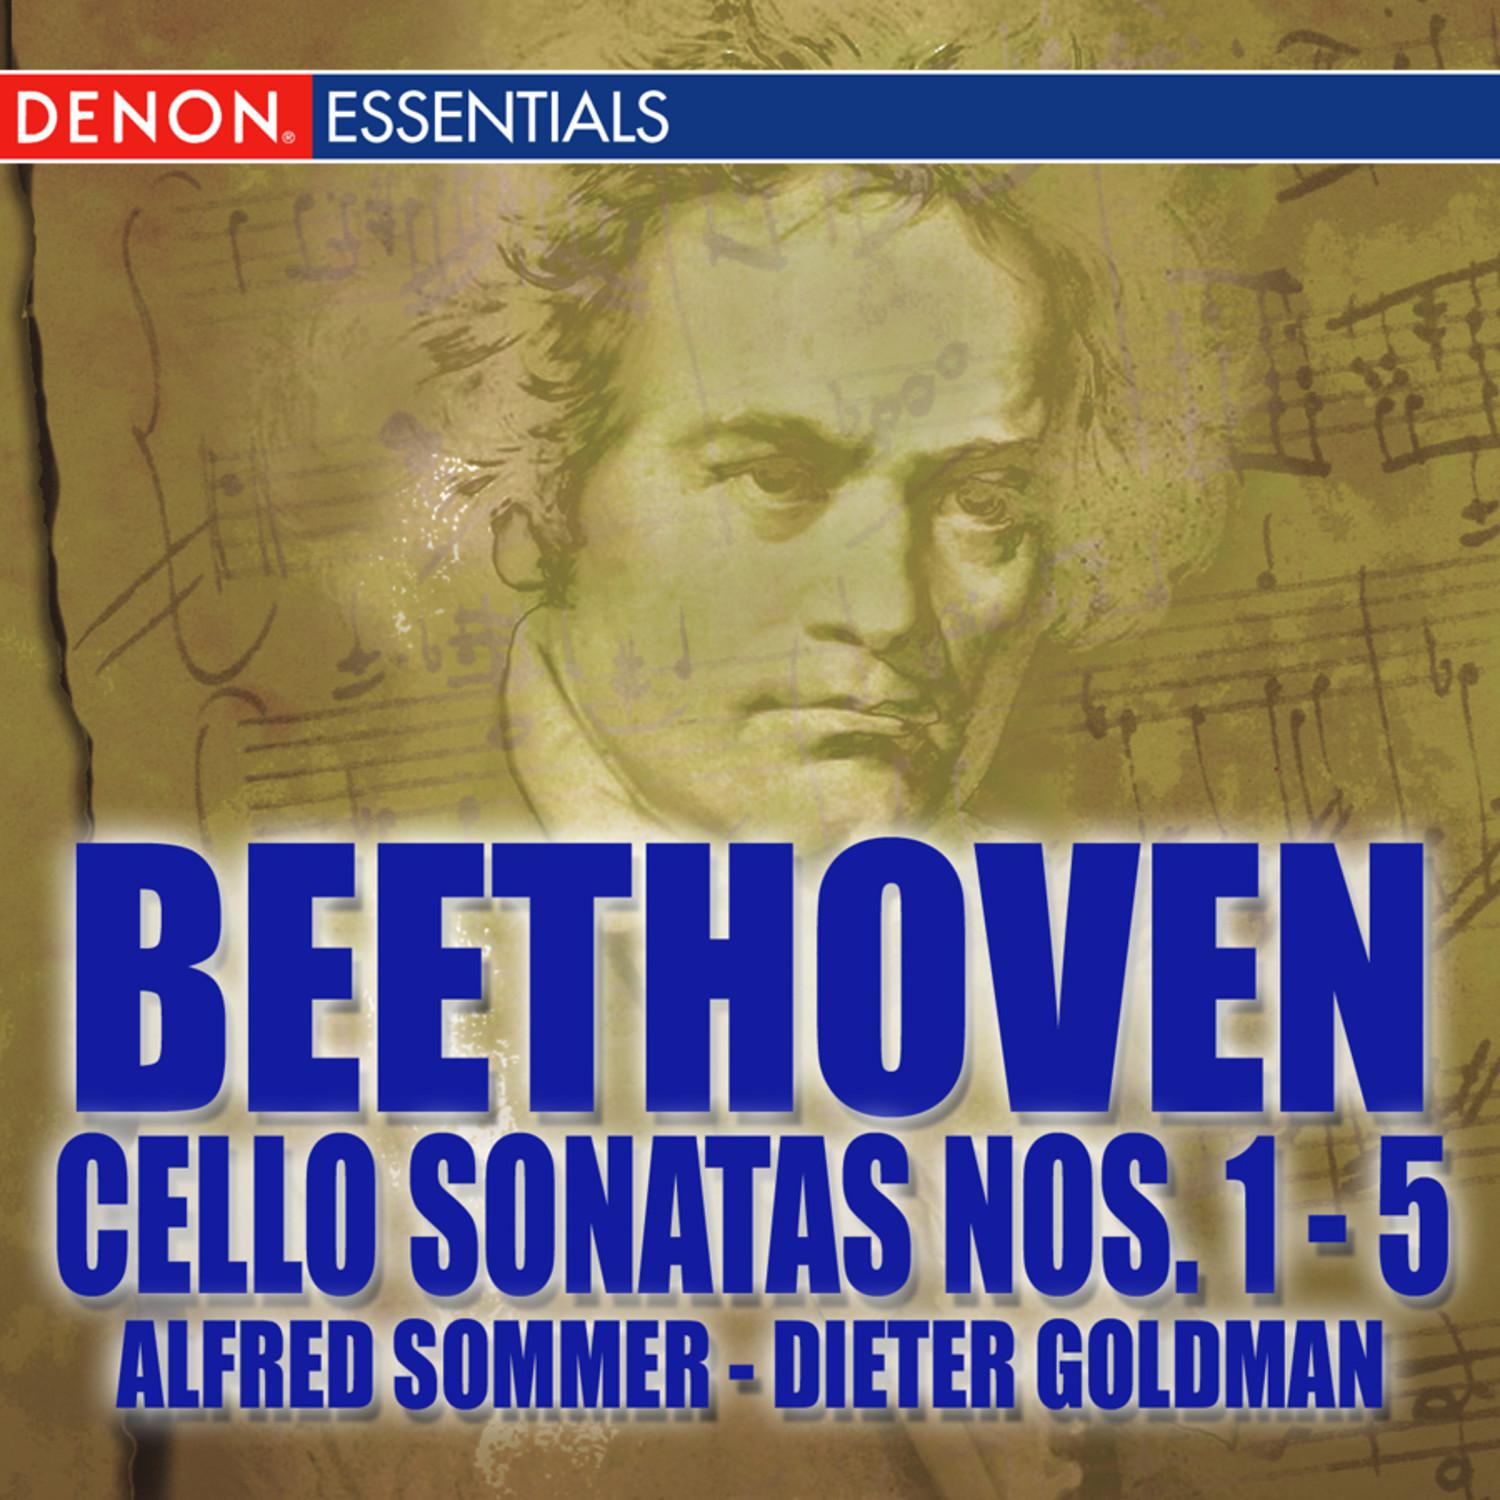 Cello Sonata No. 3 in A Major, Op. 69: Allegro, ma non tanto - Scherzo - Adagio cantabile - Allegro vivace